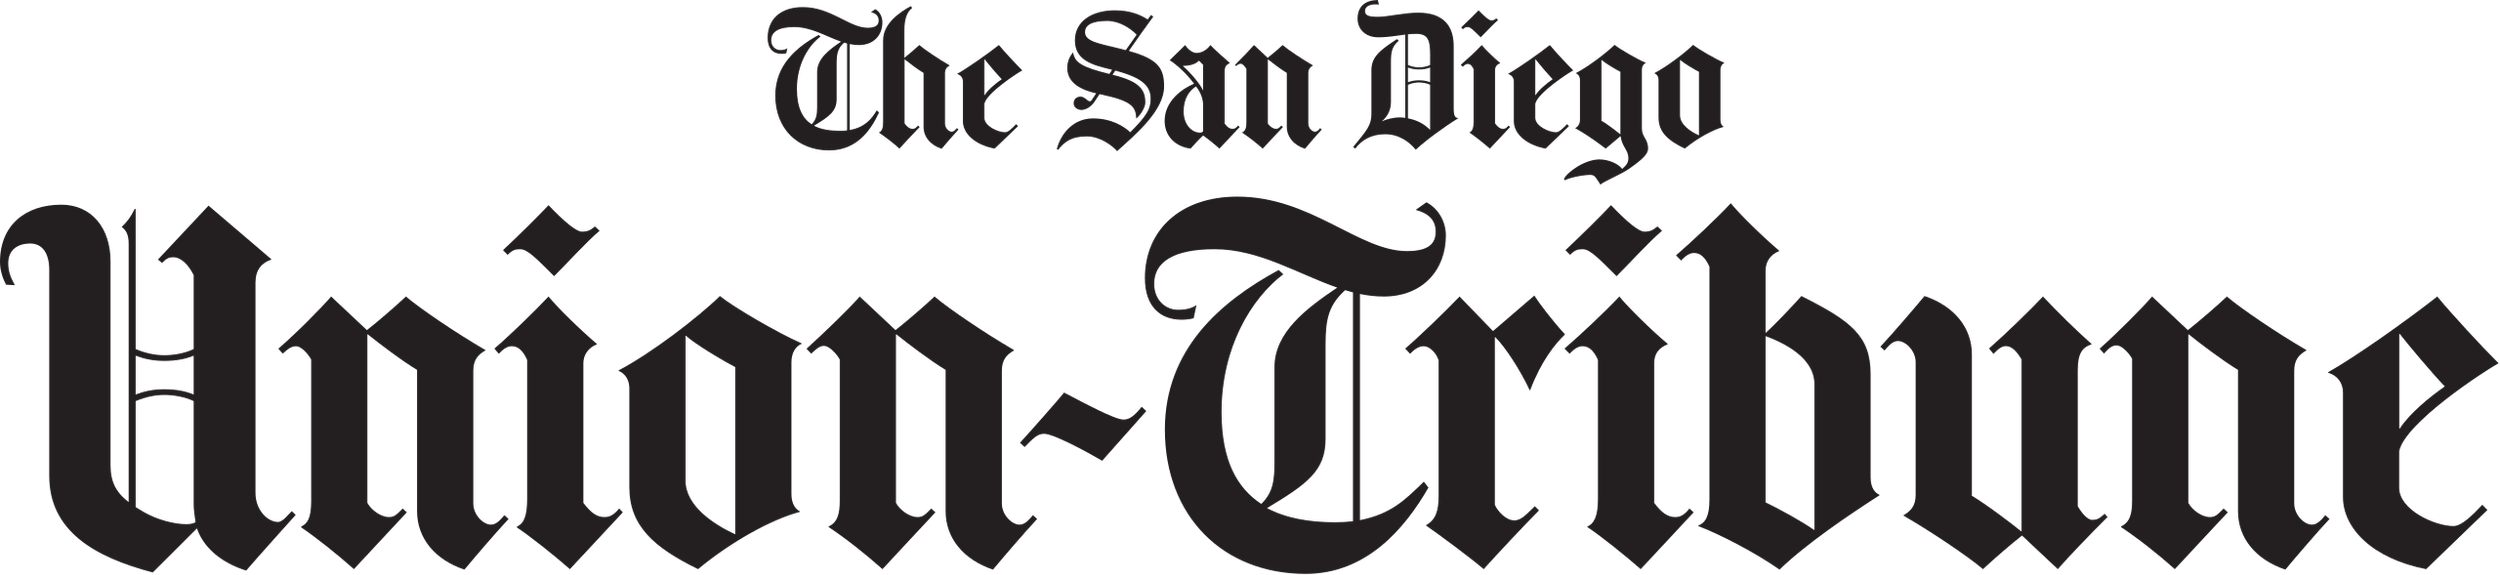 8/5/22 - The San Diego Union Tribune